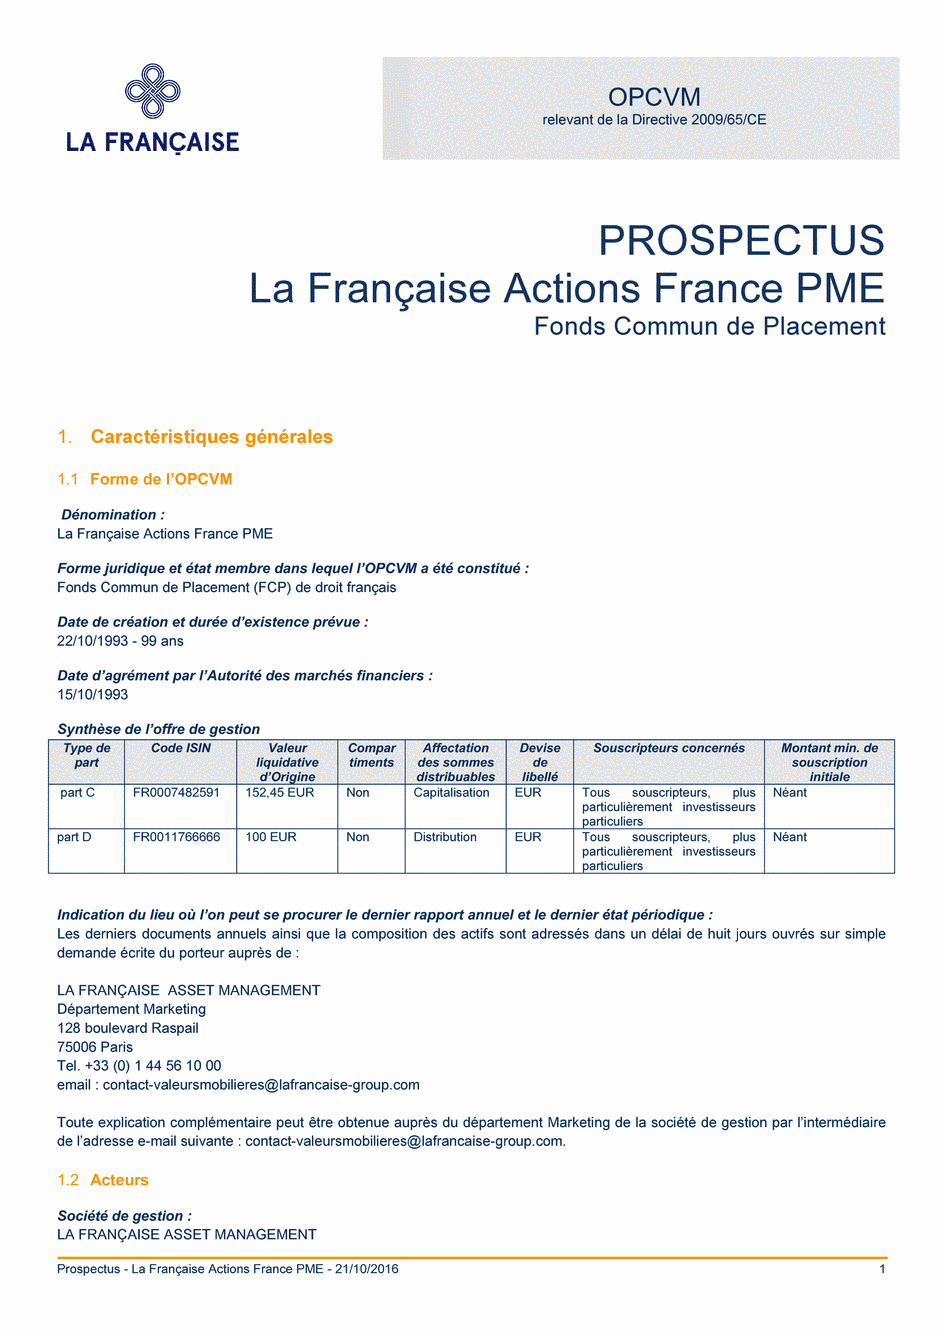 Prospectus LA FRANCAISE ACTIONS FRANCE PME - 21/10/2016 - Français